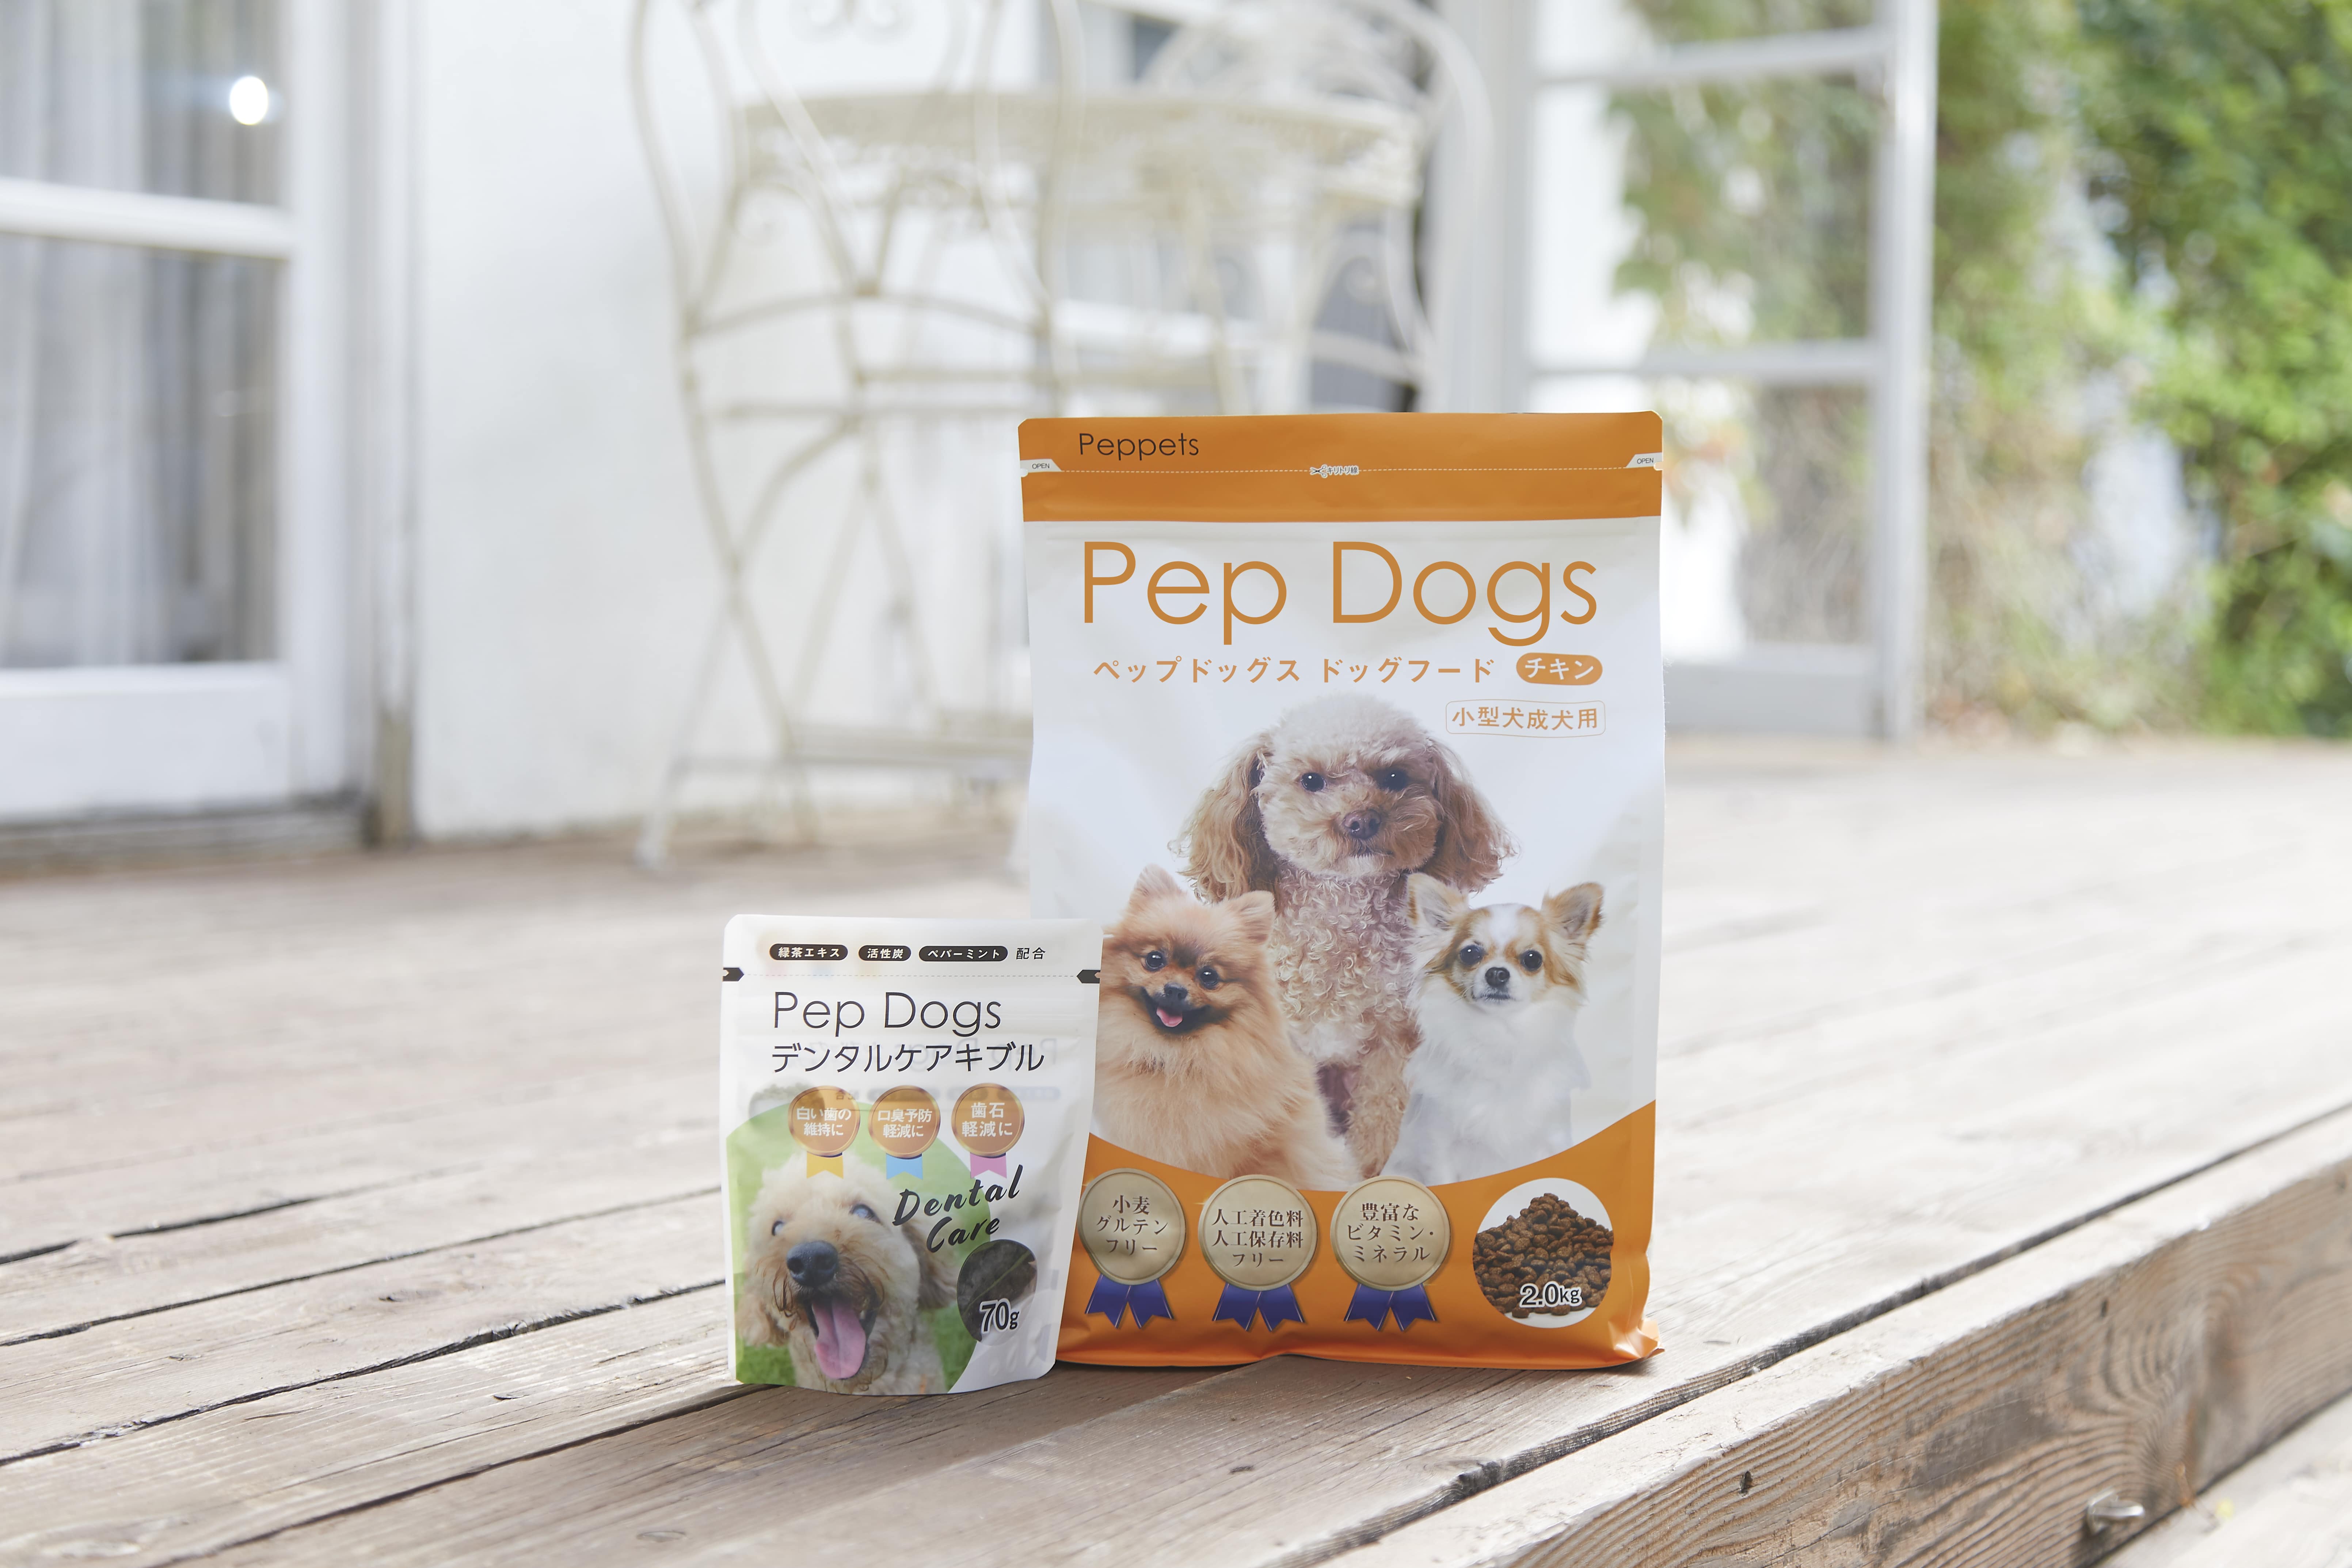 ムツゴロウさん推薦 健康と食いつきを実現した 小型犬成犬用のドッグフードとデンタルケアおやつが2月24日に発売 株式会社peppetsのプレスリリース